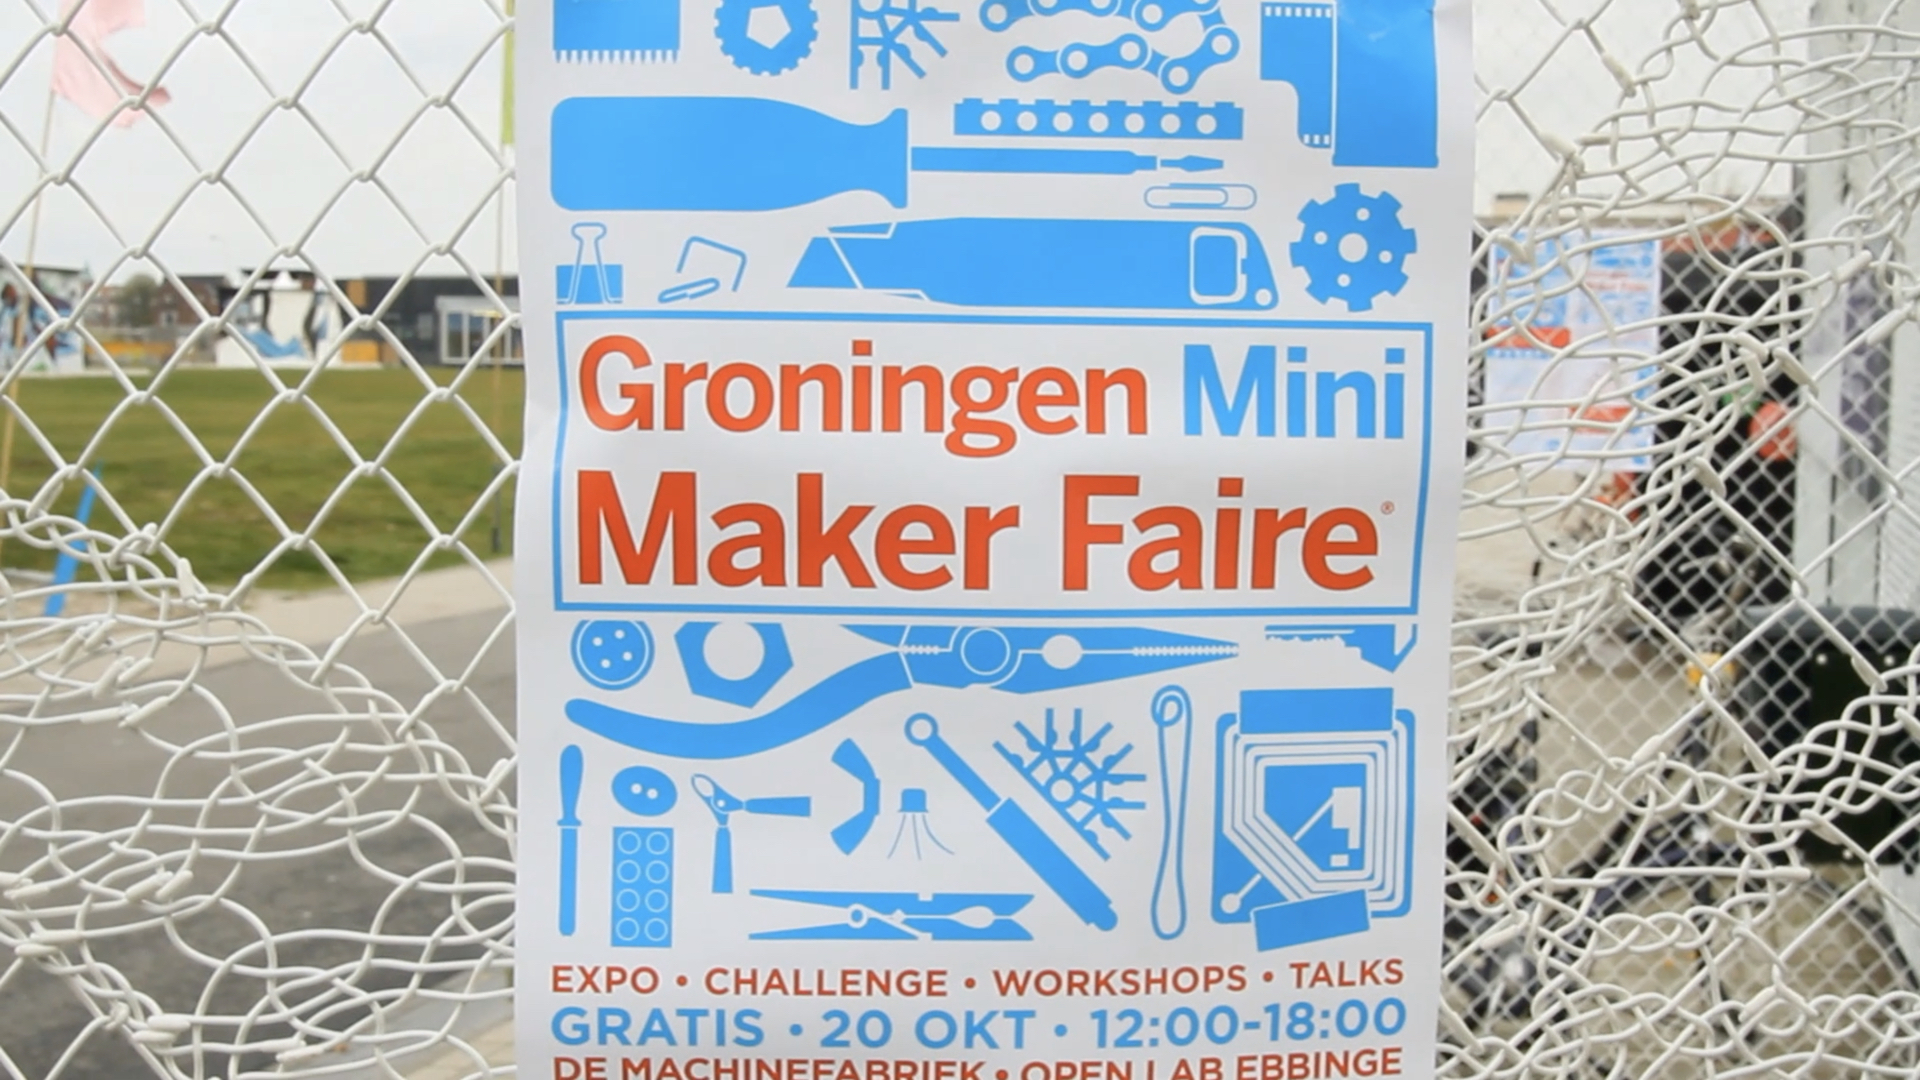 Groningen Mini Maker Faire 2012